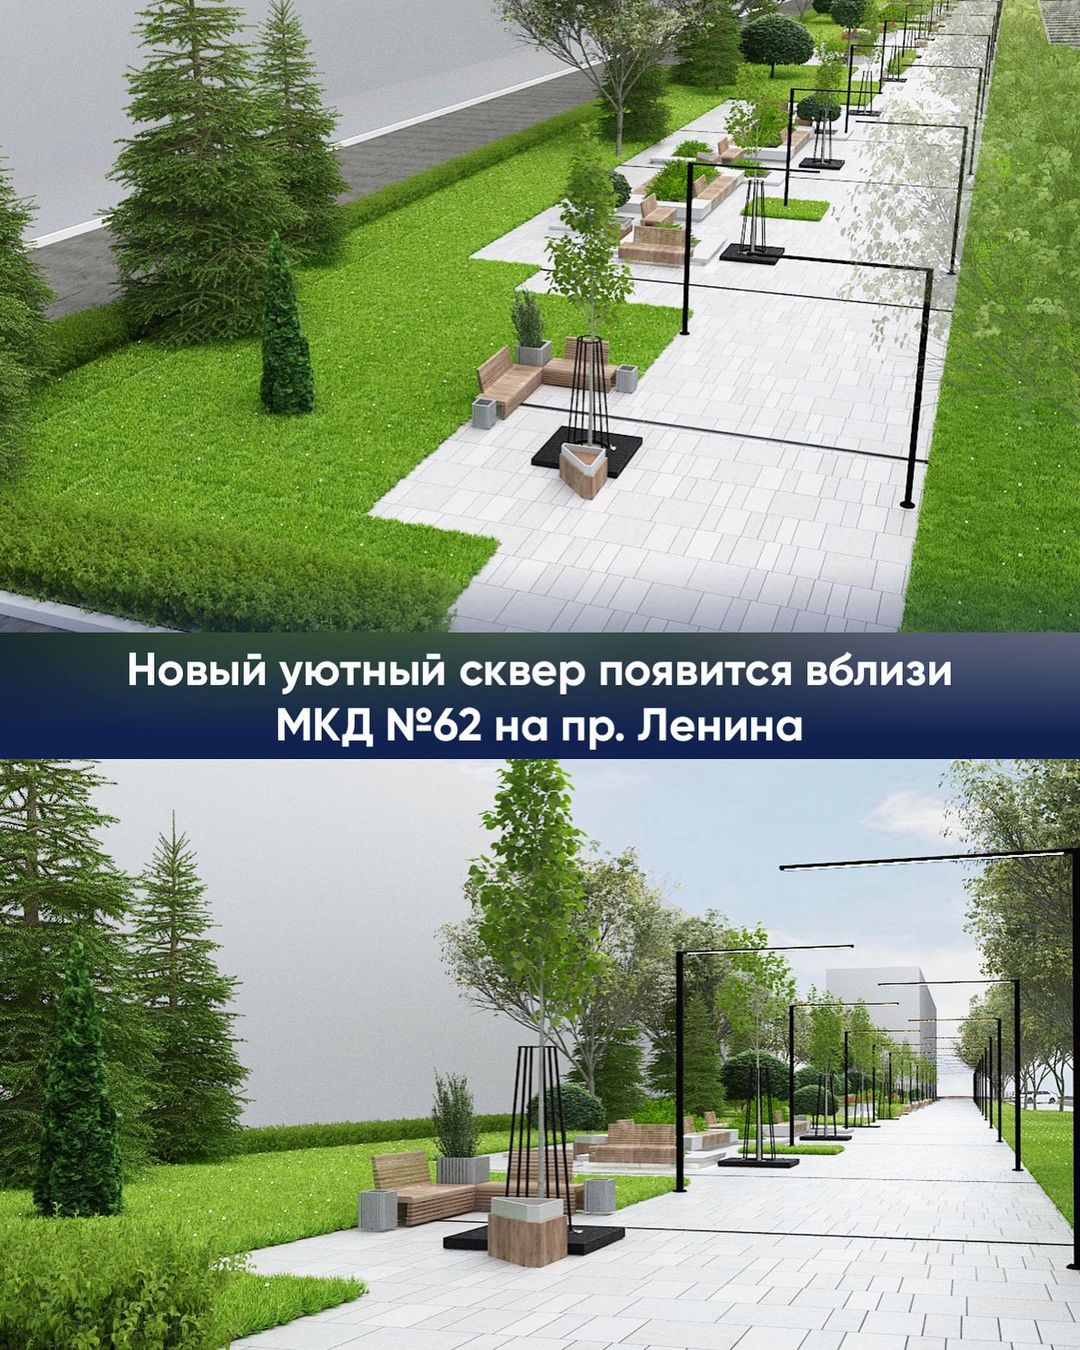 В столице Карачаево-Черкесии по проспекту Ленина появится уютный сквер